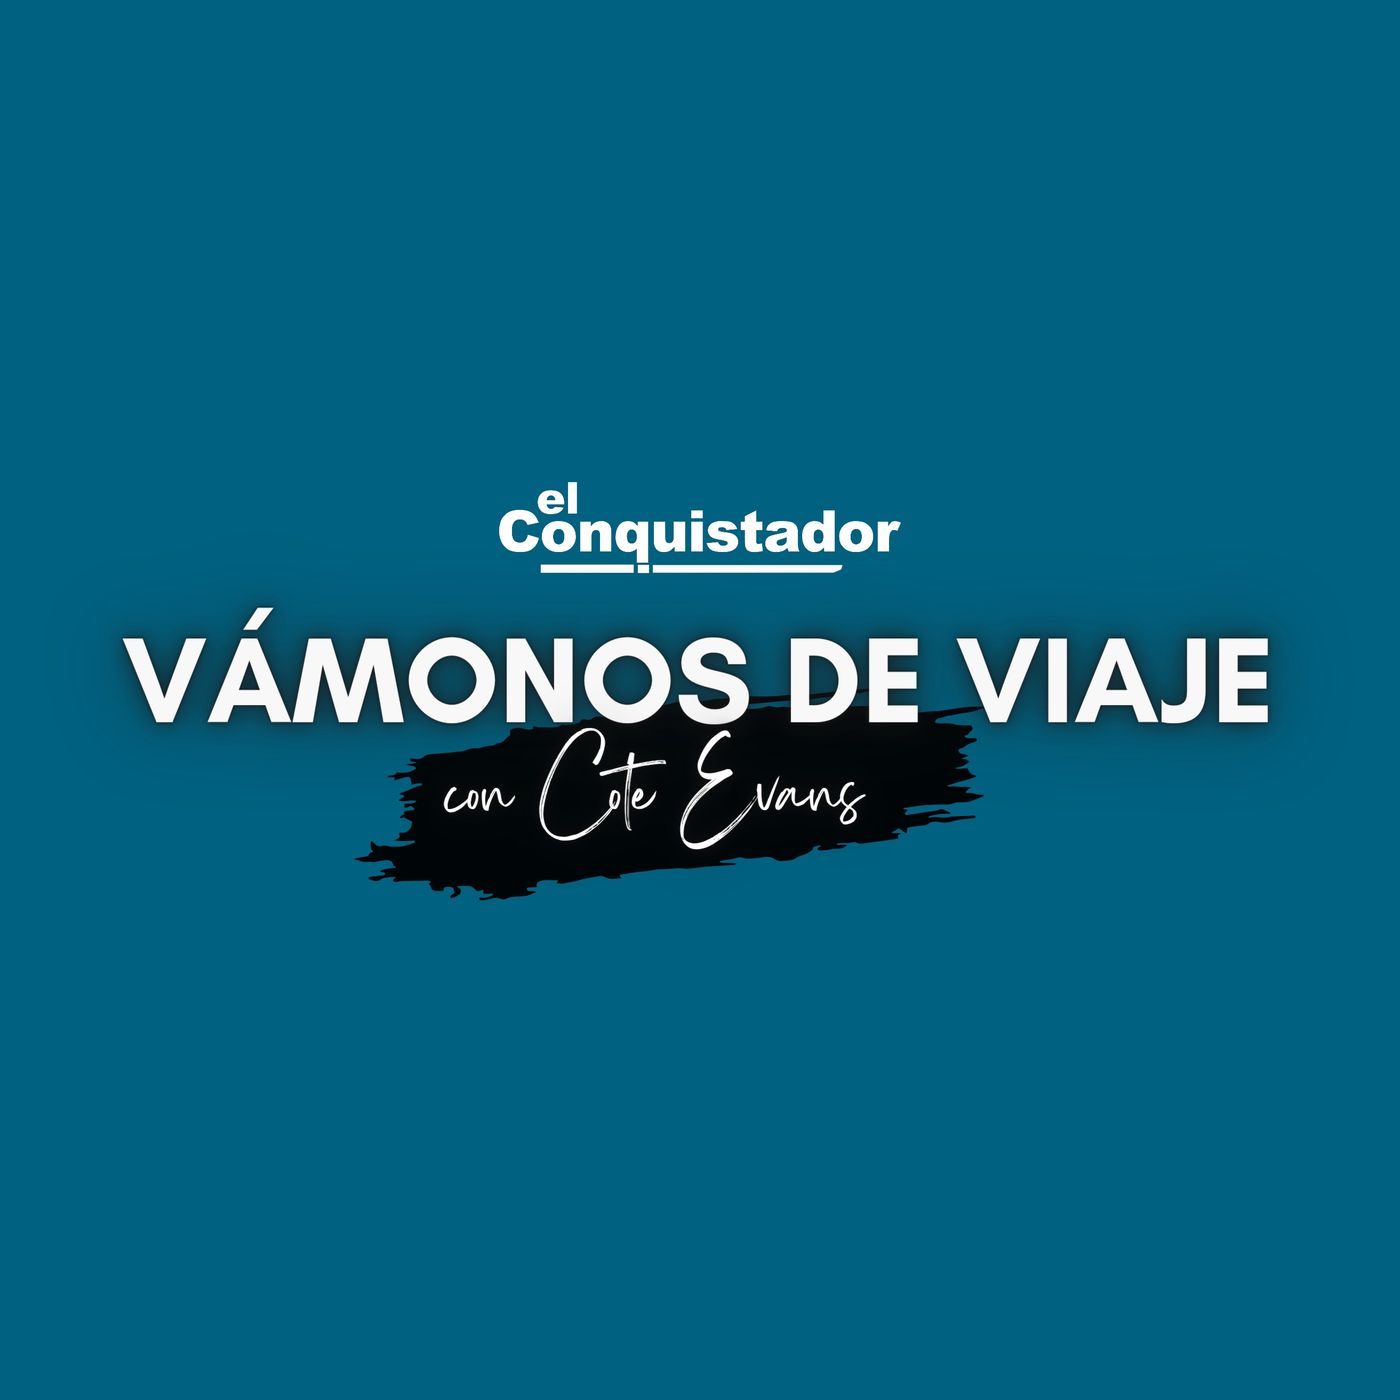 VAMONOS DE VIAJE 22-08-2021